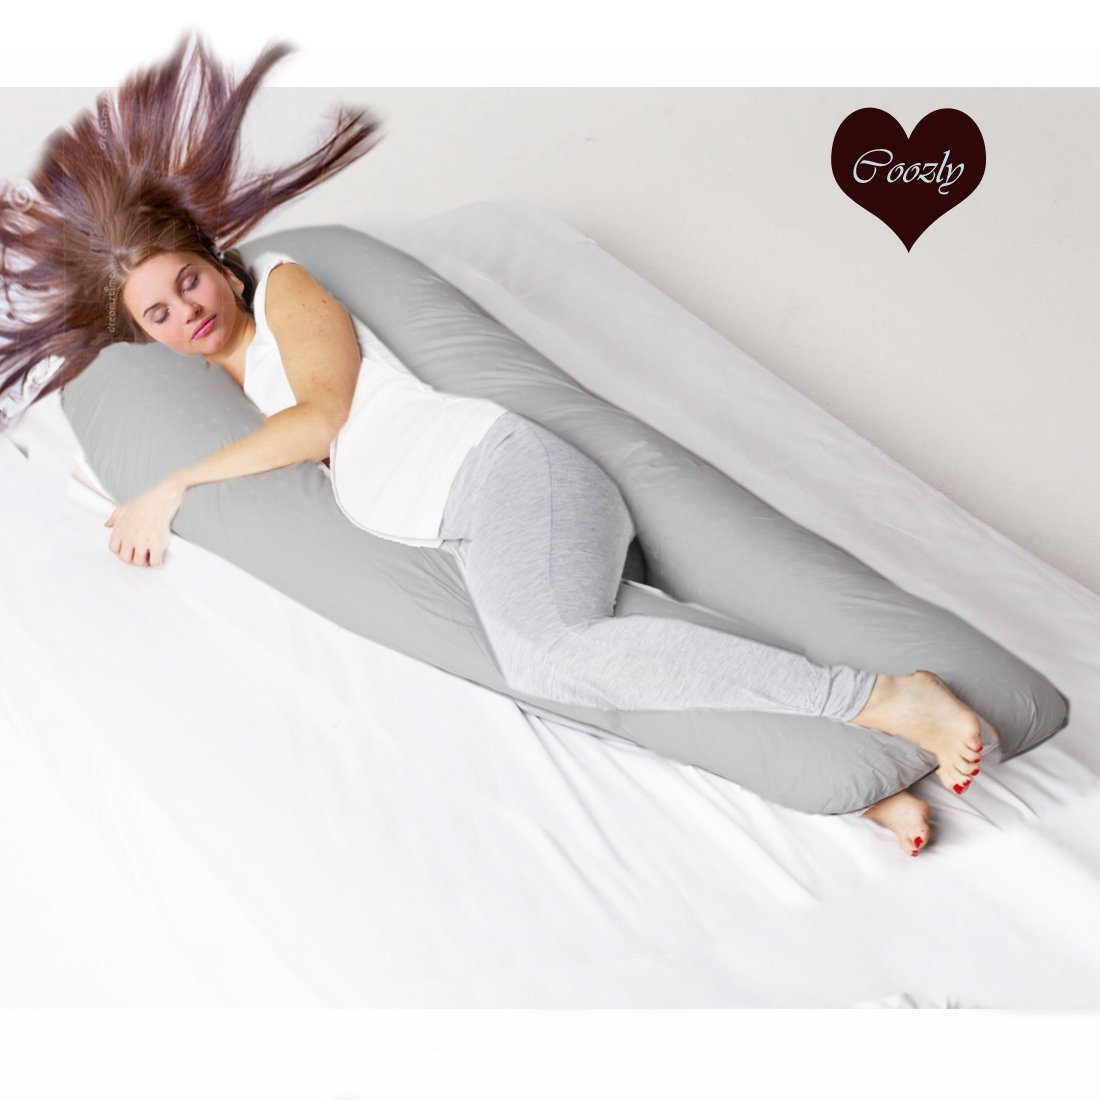 Grey-Coozly U Basic Pregnancy Body Pillow